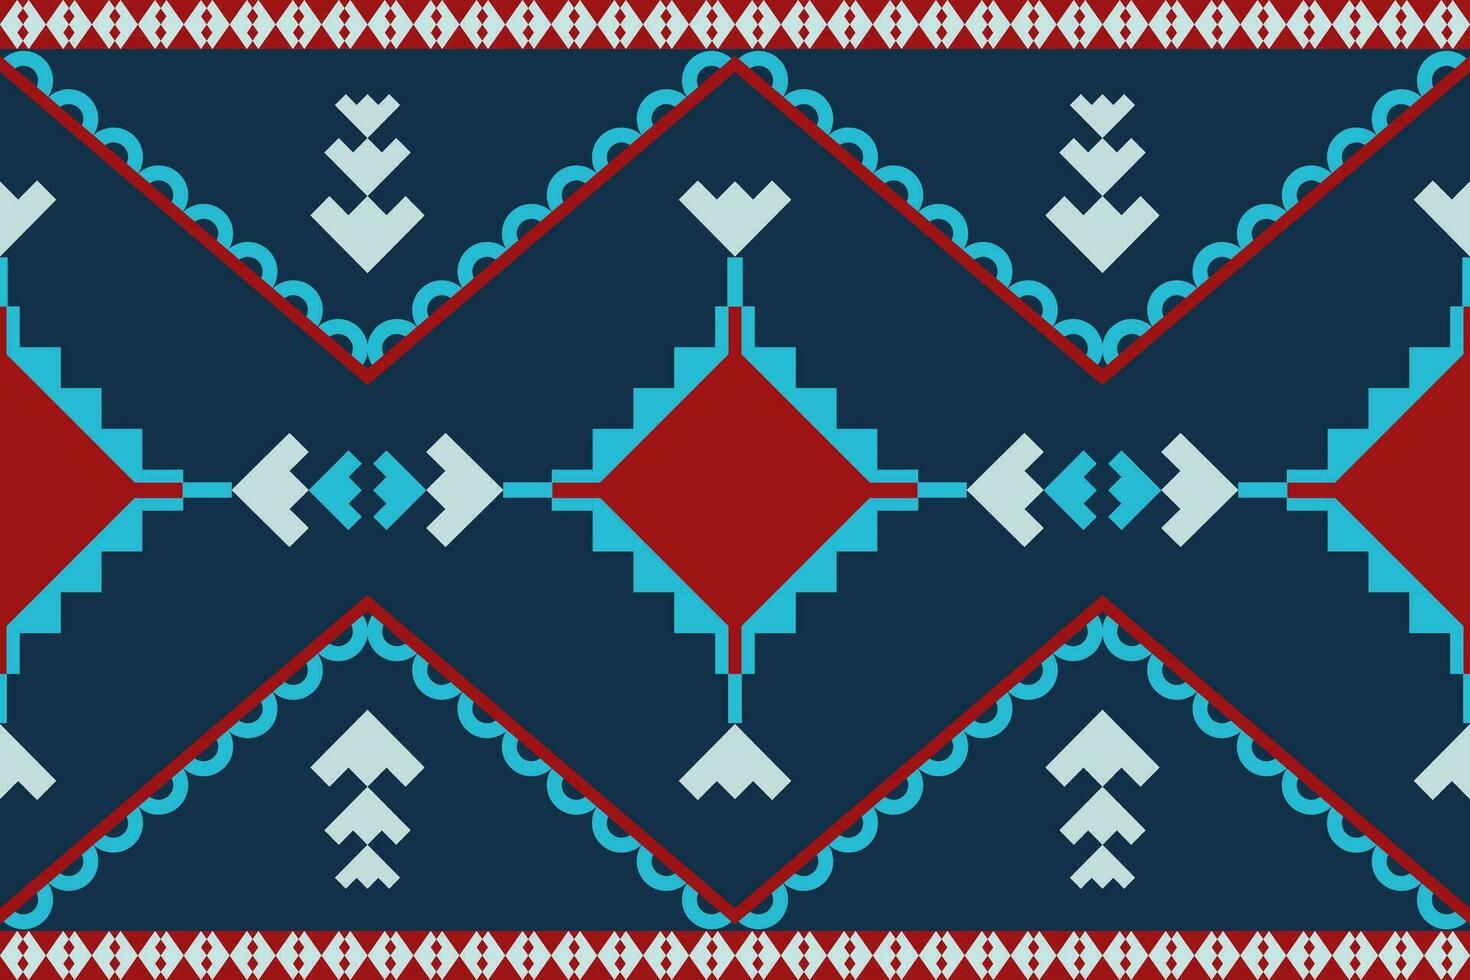 étnico ilustración vector.colorido asiático estilo floral patrón.abstracto étnico azteca geométrico modelo diseño para fondo.damasco estilo modelo para textil y decoración. vector